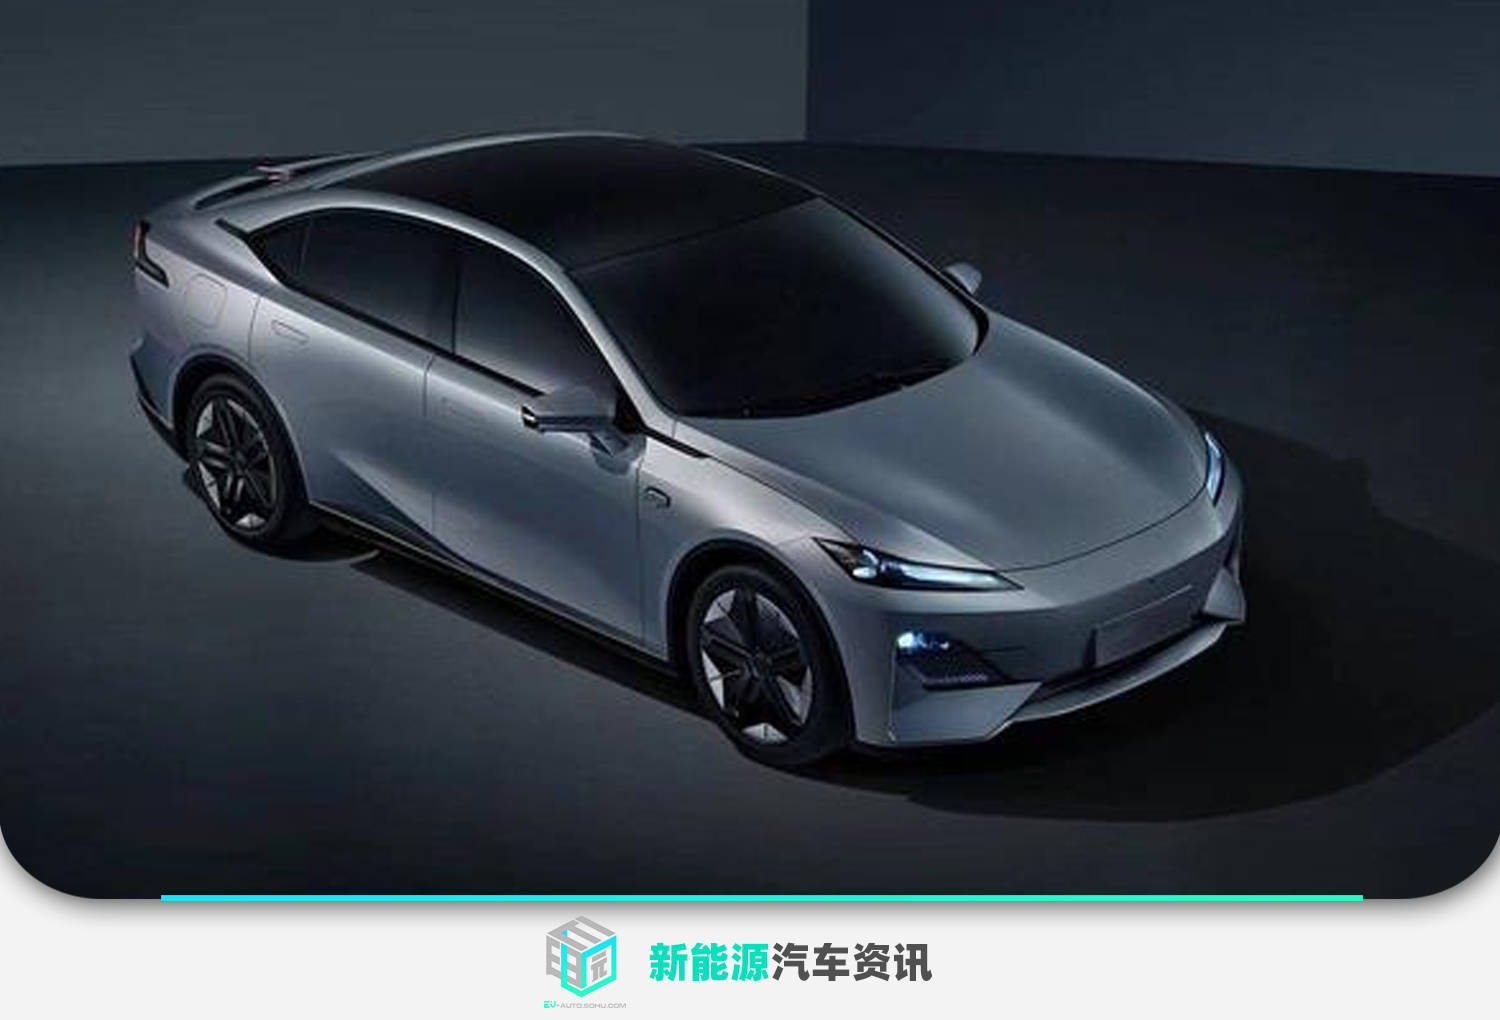 长安深蓝品牌正式发布 首款车型将在下半年上市